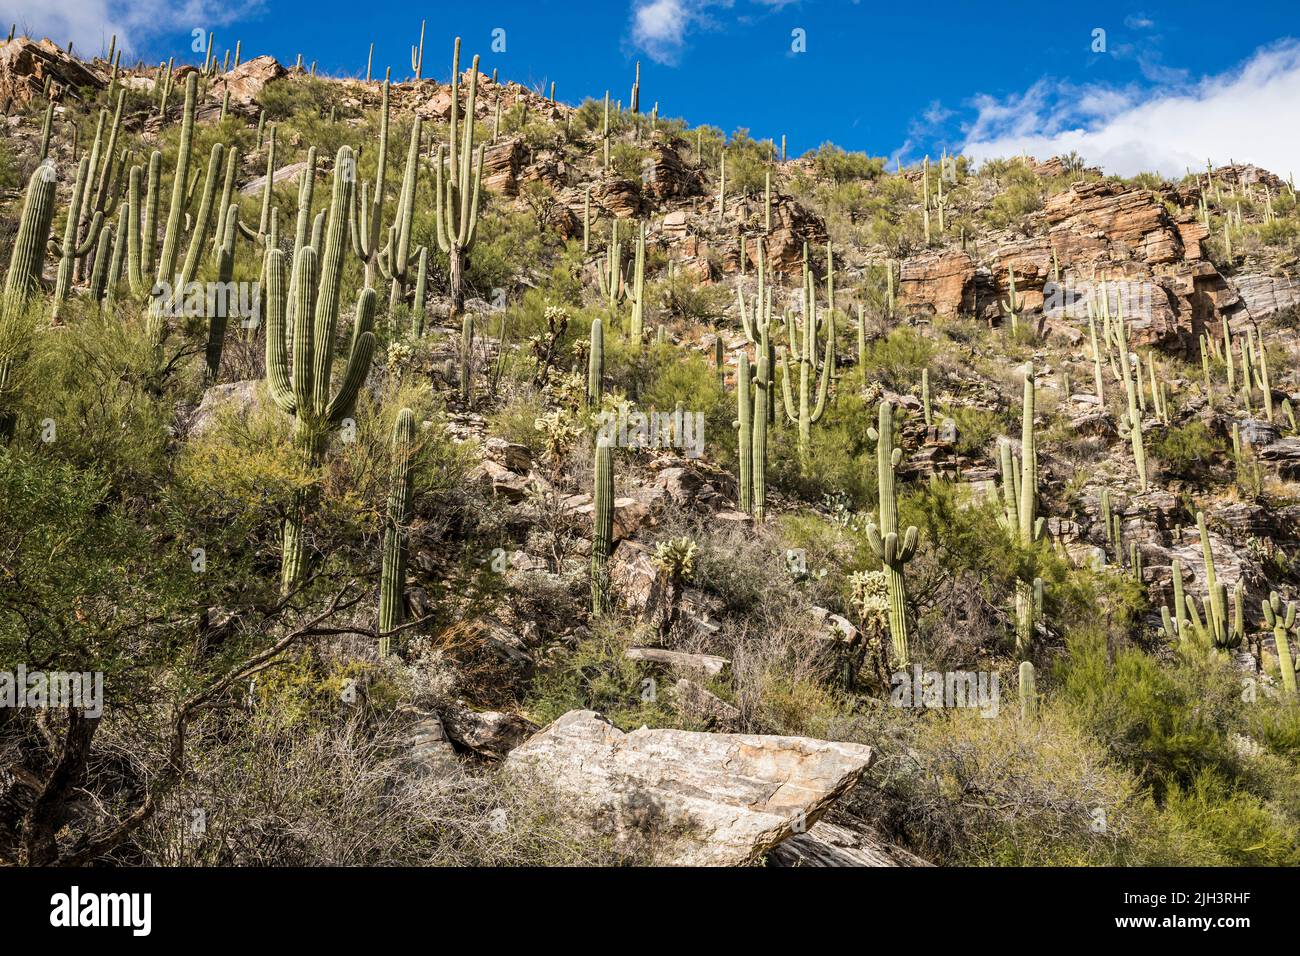 Acantilados y Cactus Saguaro en el Área Recreativa Sabino Canyon, Arizona, EE.UU. Foto de stock